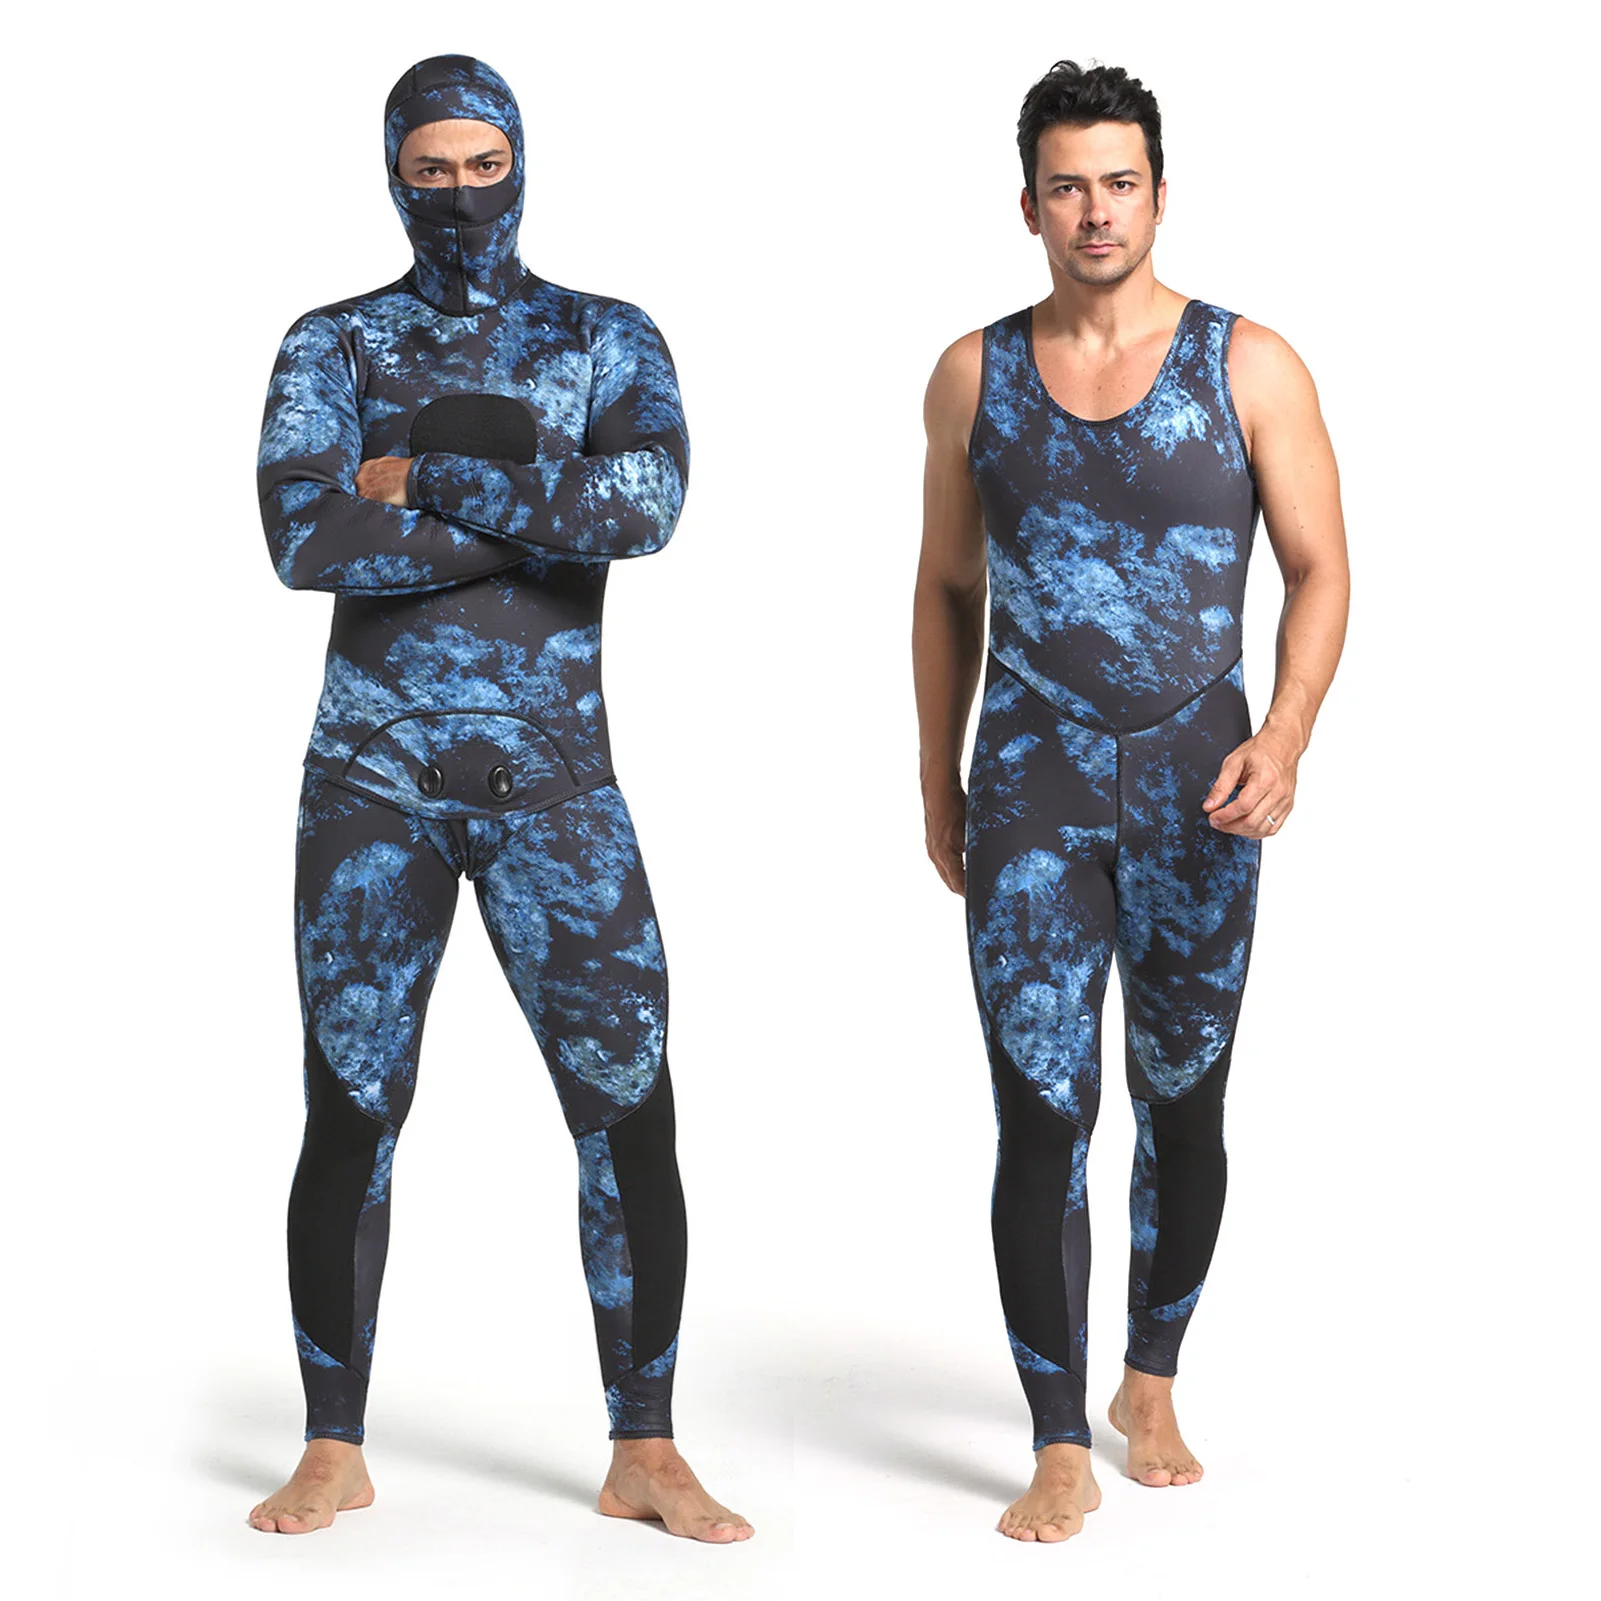 

3 мм Для мужчин неопрен Плавание Гидрокостюмы мокрого типа 2 костюм из двух частей с длинными рукавами костюм для дайвинга для подводное пла...